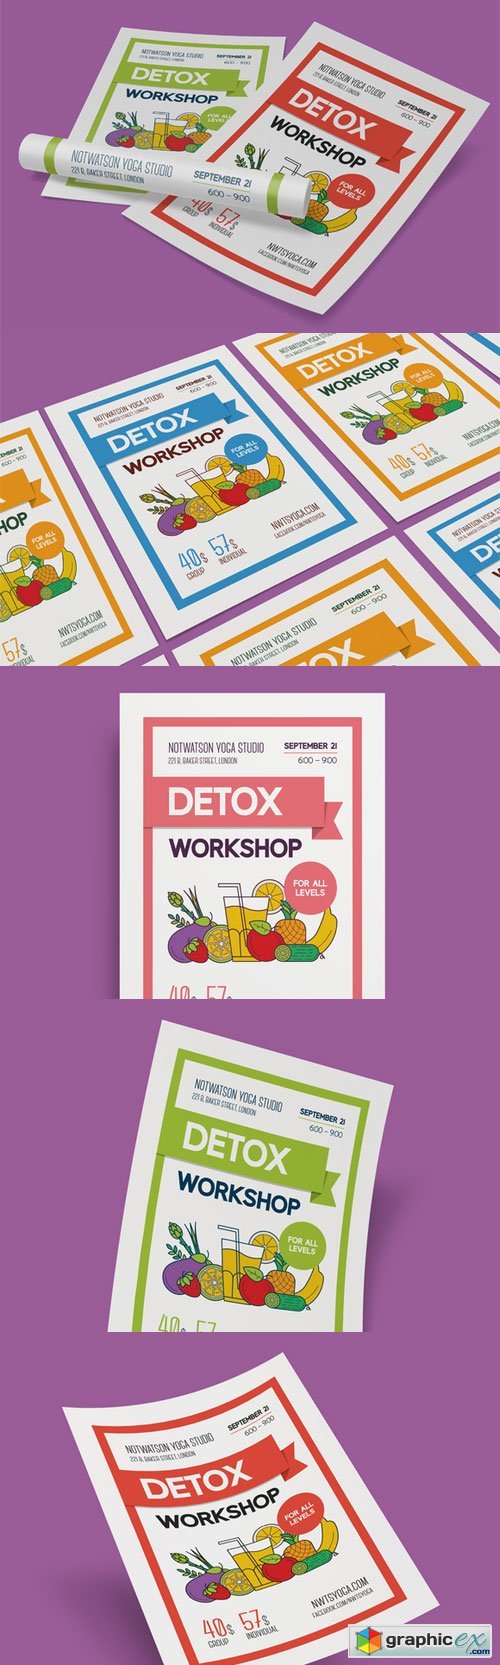 Detox workshop poster template